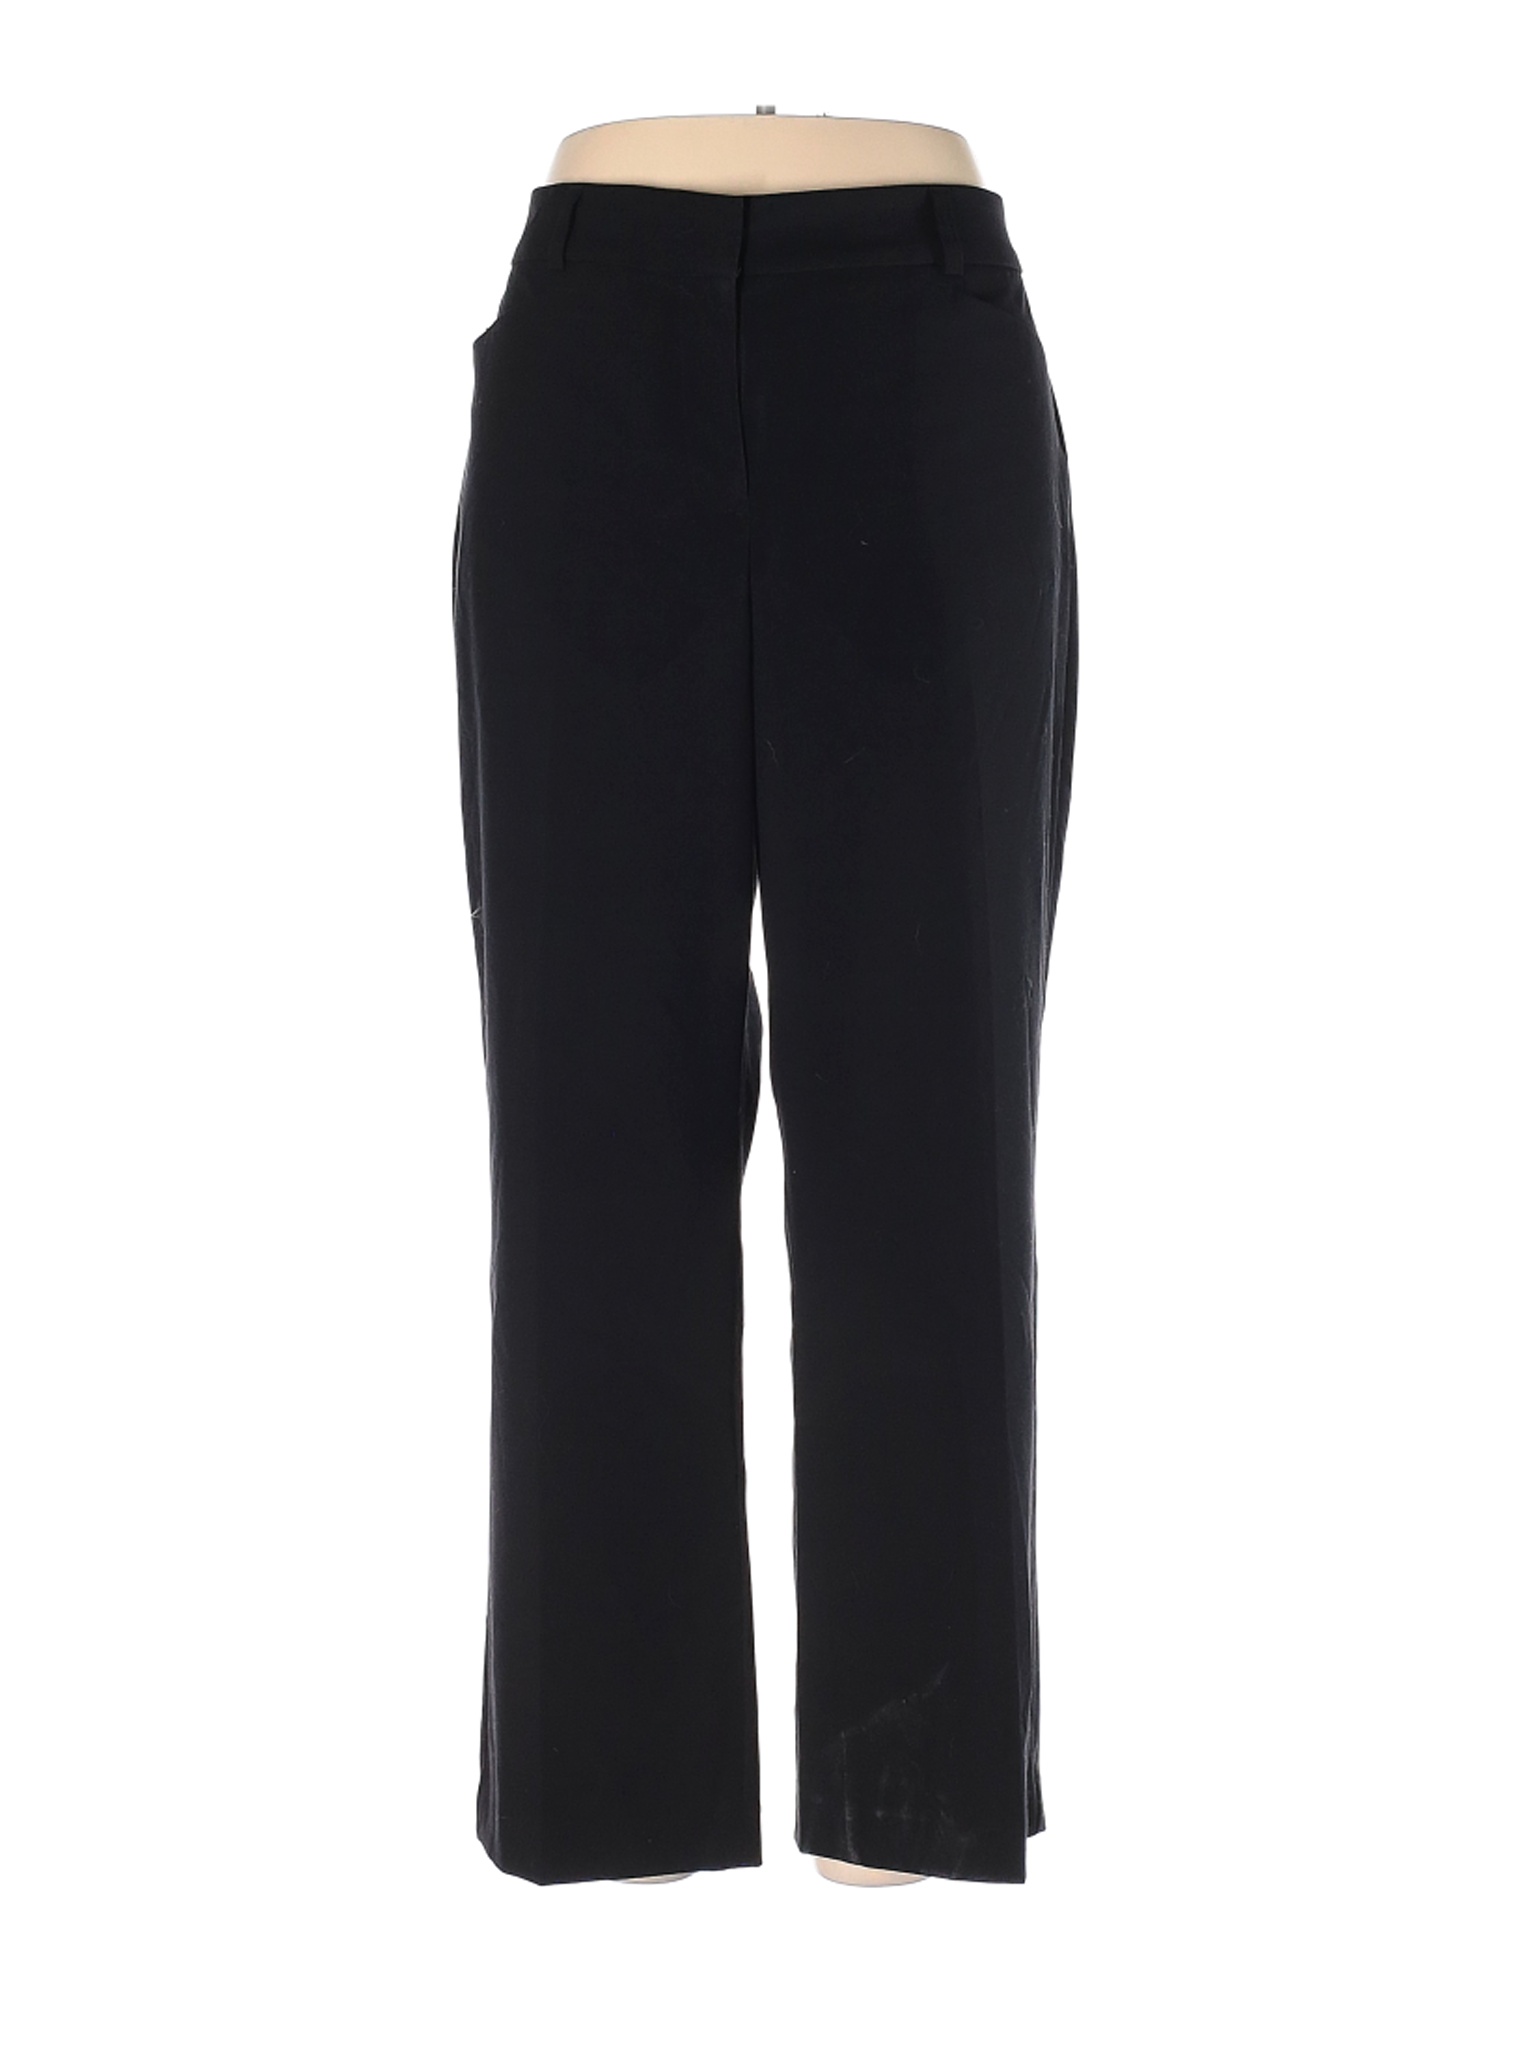 Lane Bryant Women Black Dress Pants 16 Plus | eBay